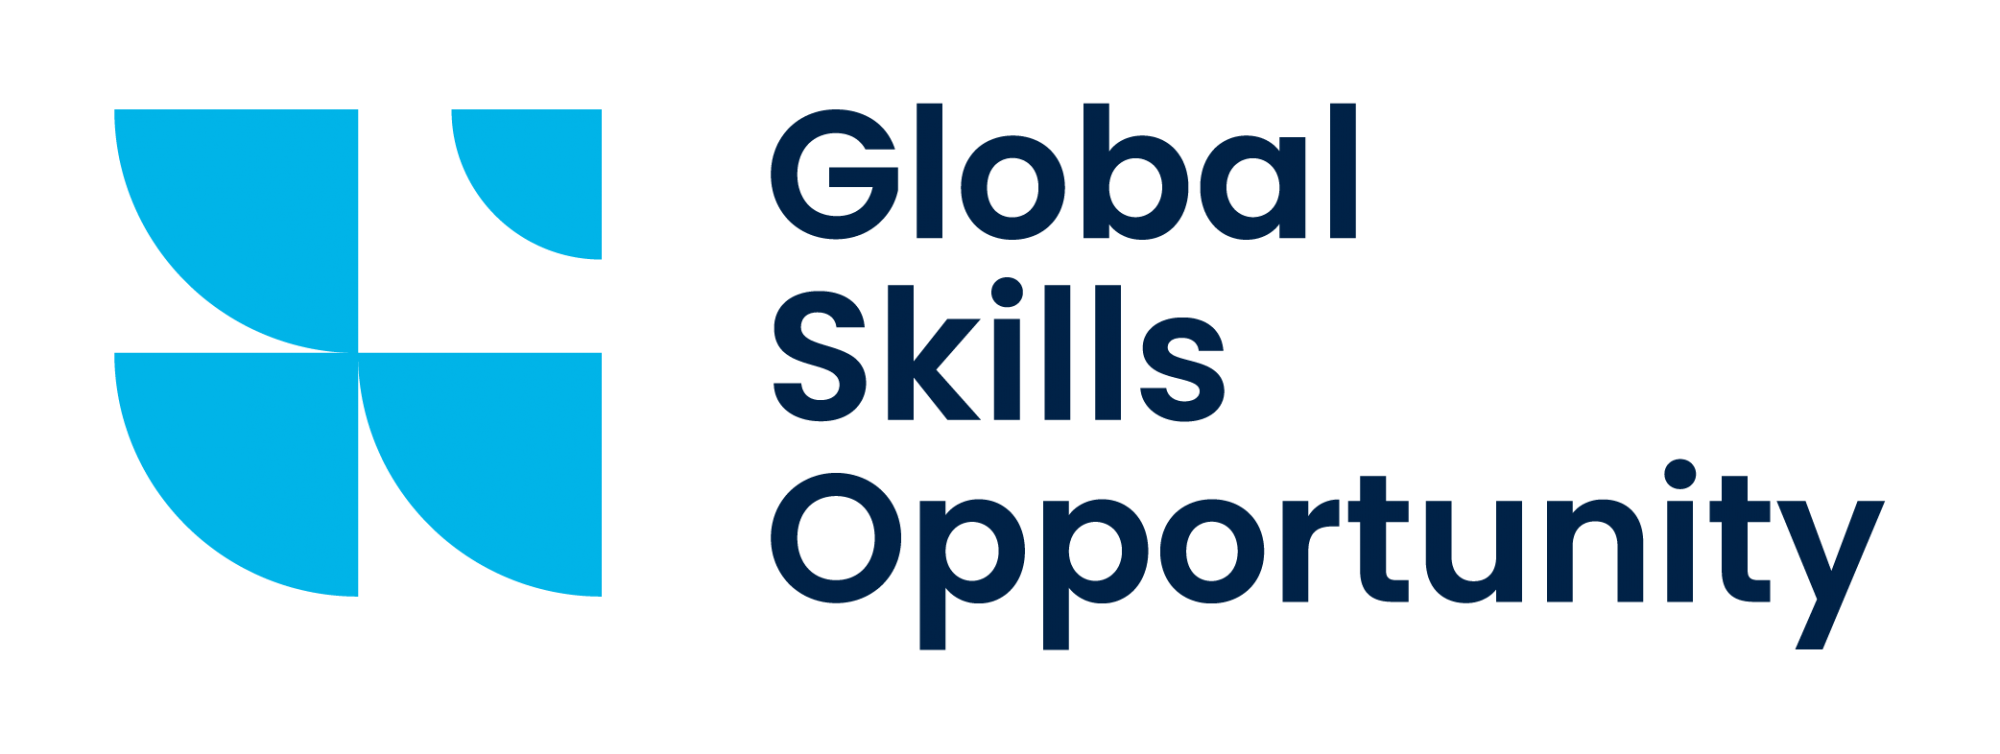 Oportunidades de habilidades globales